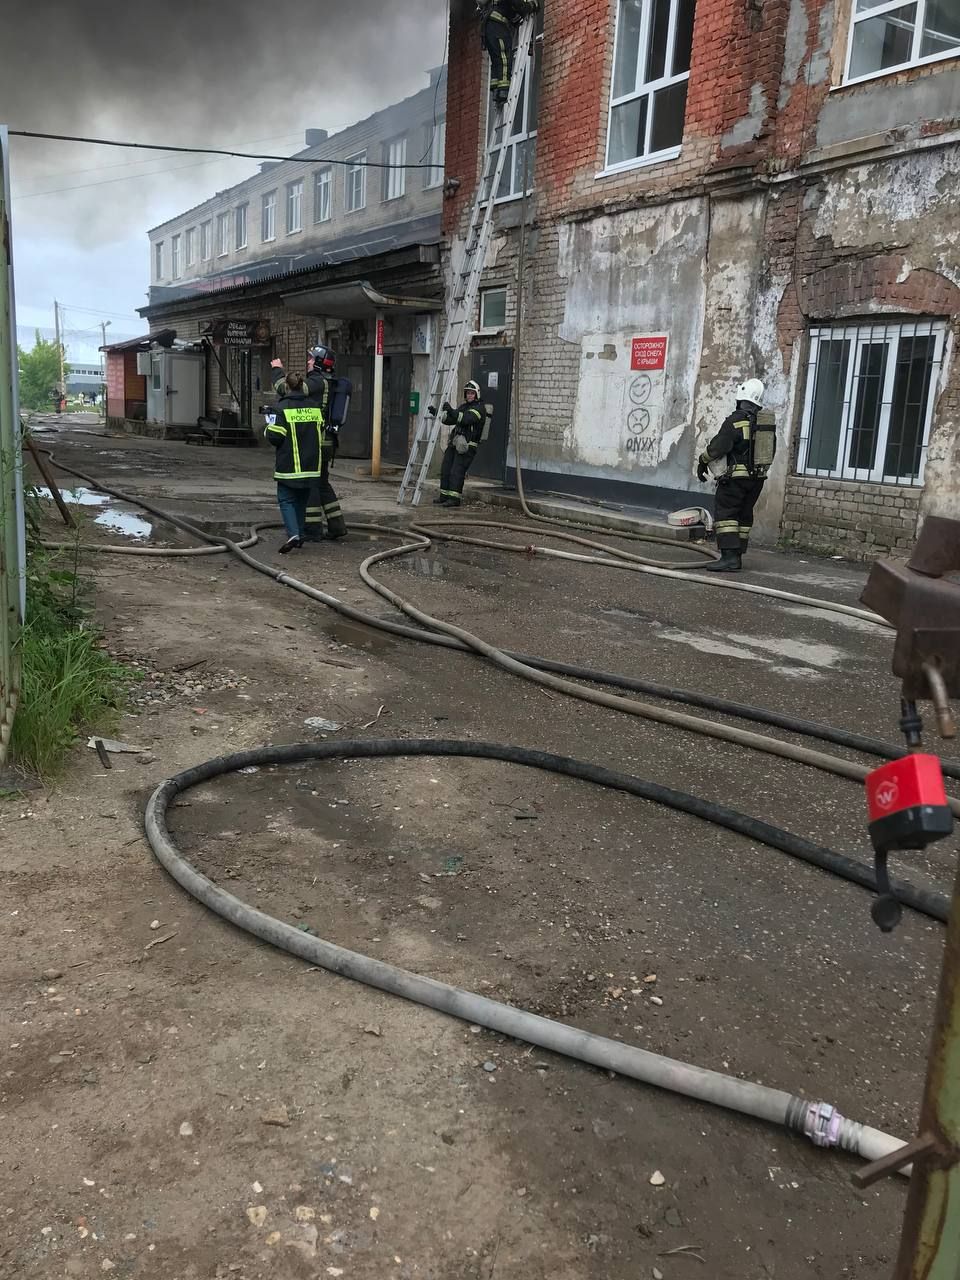 Жуткий пожар: здание полыхает на берегу реки Белилка в Костроме